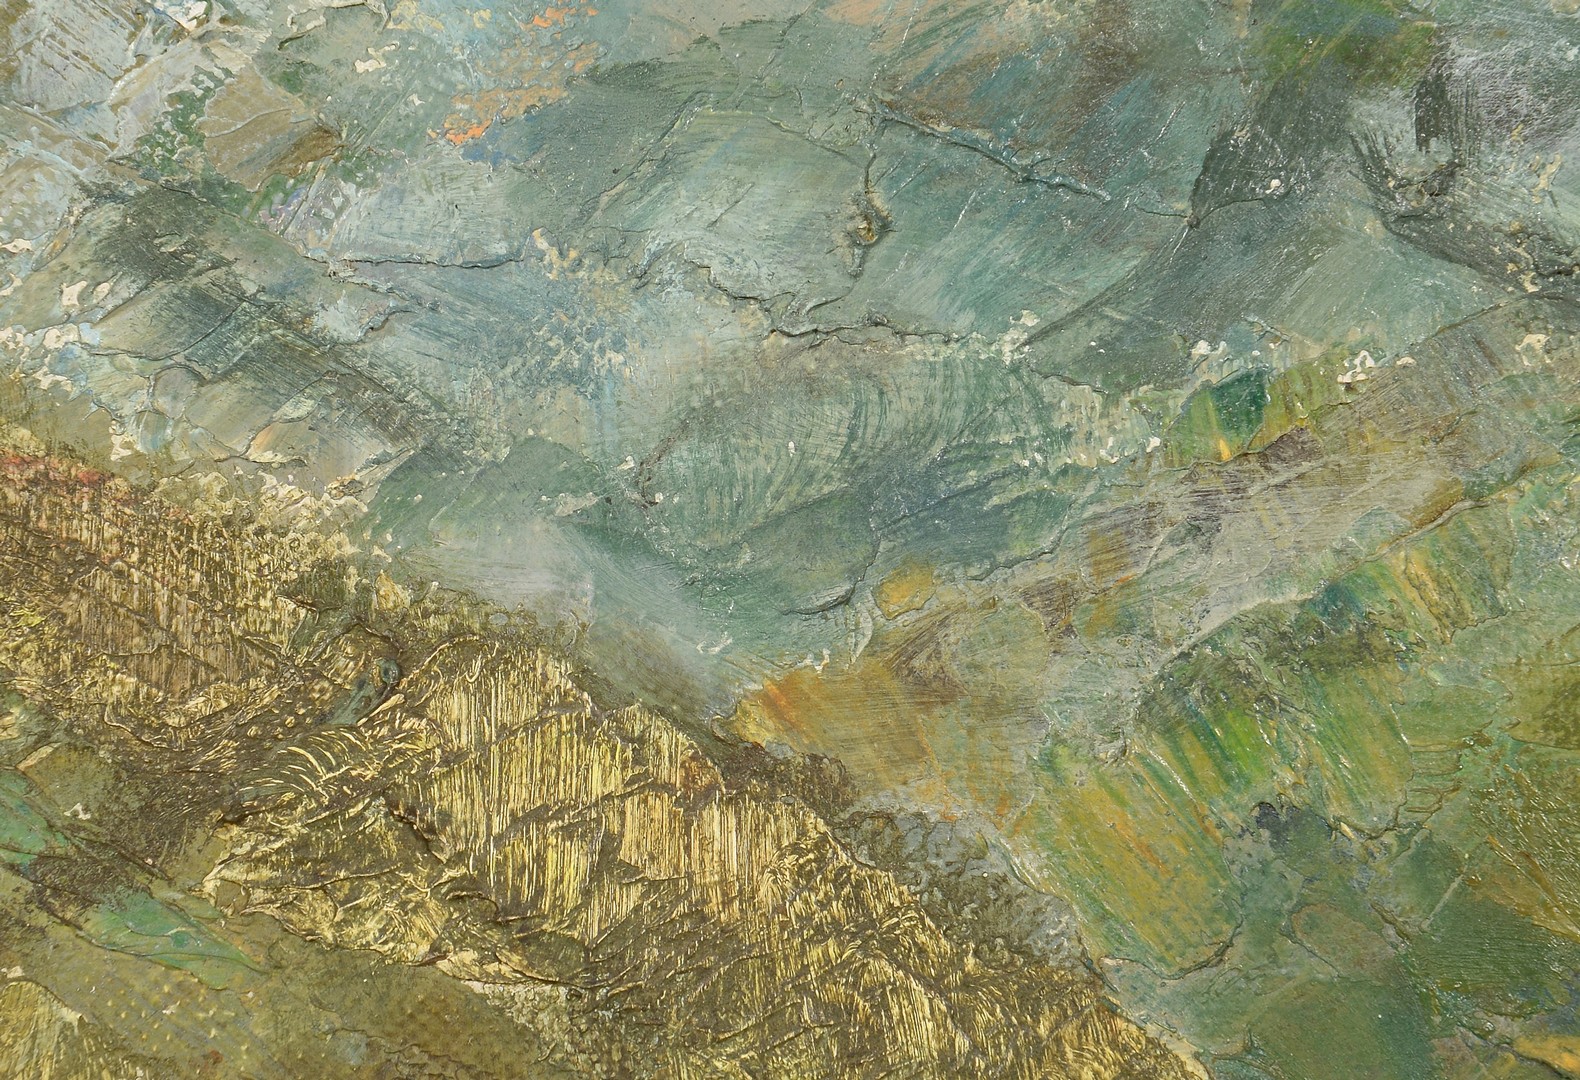 Lot 178: Pauline Wallen, oil on canvas, Smokey Mtns